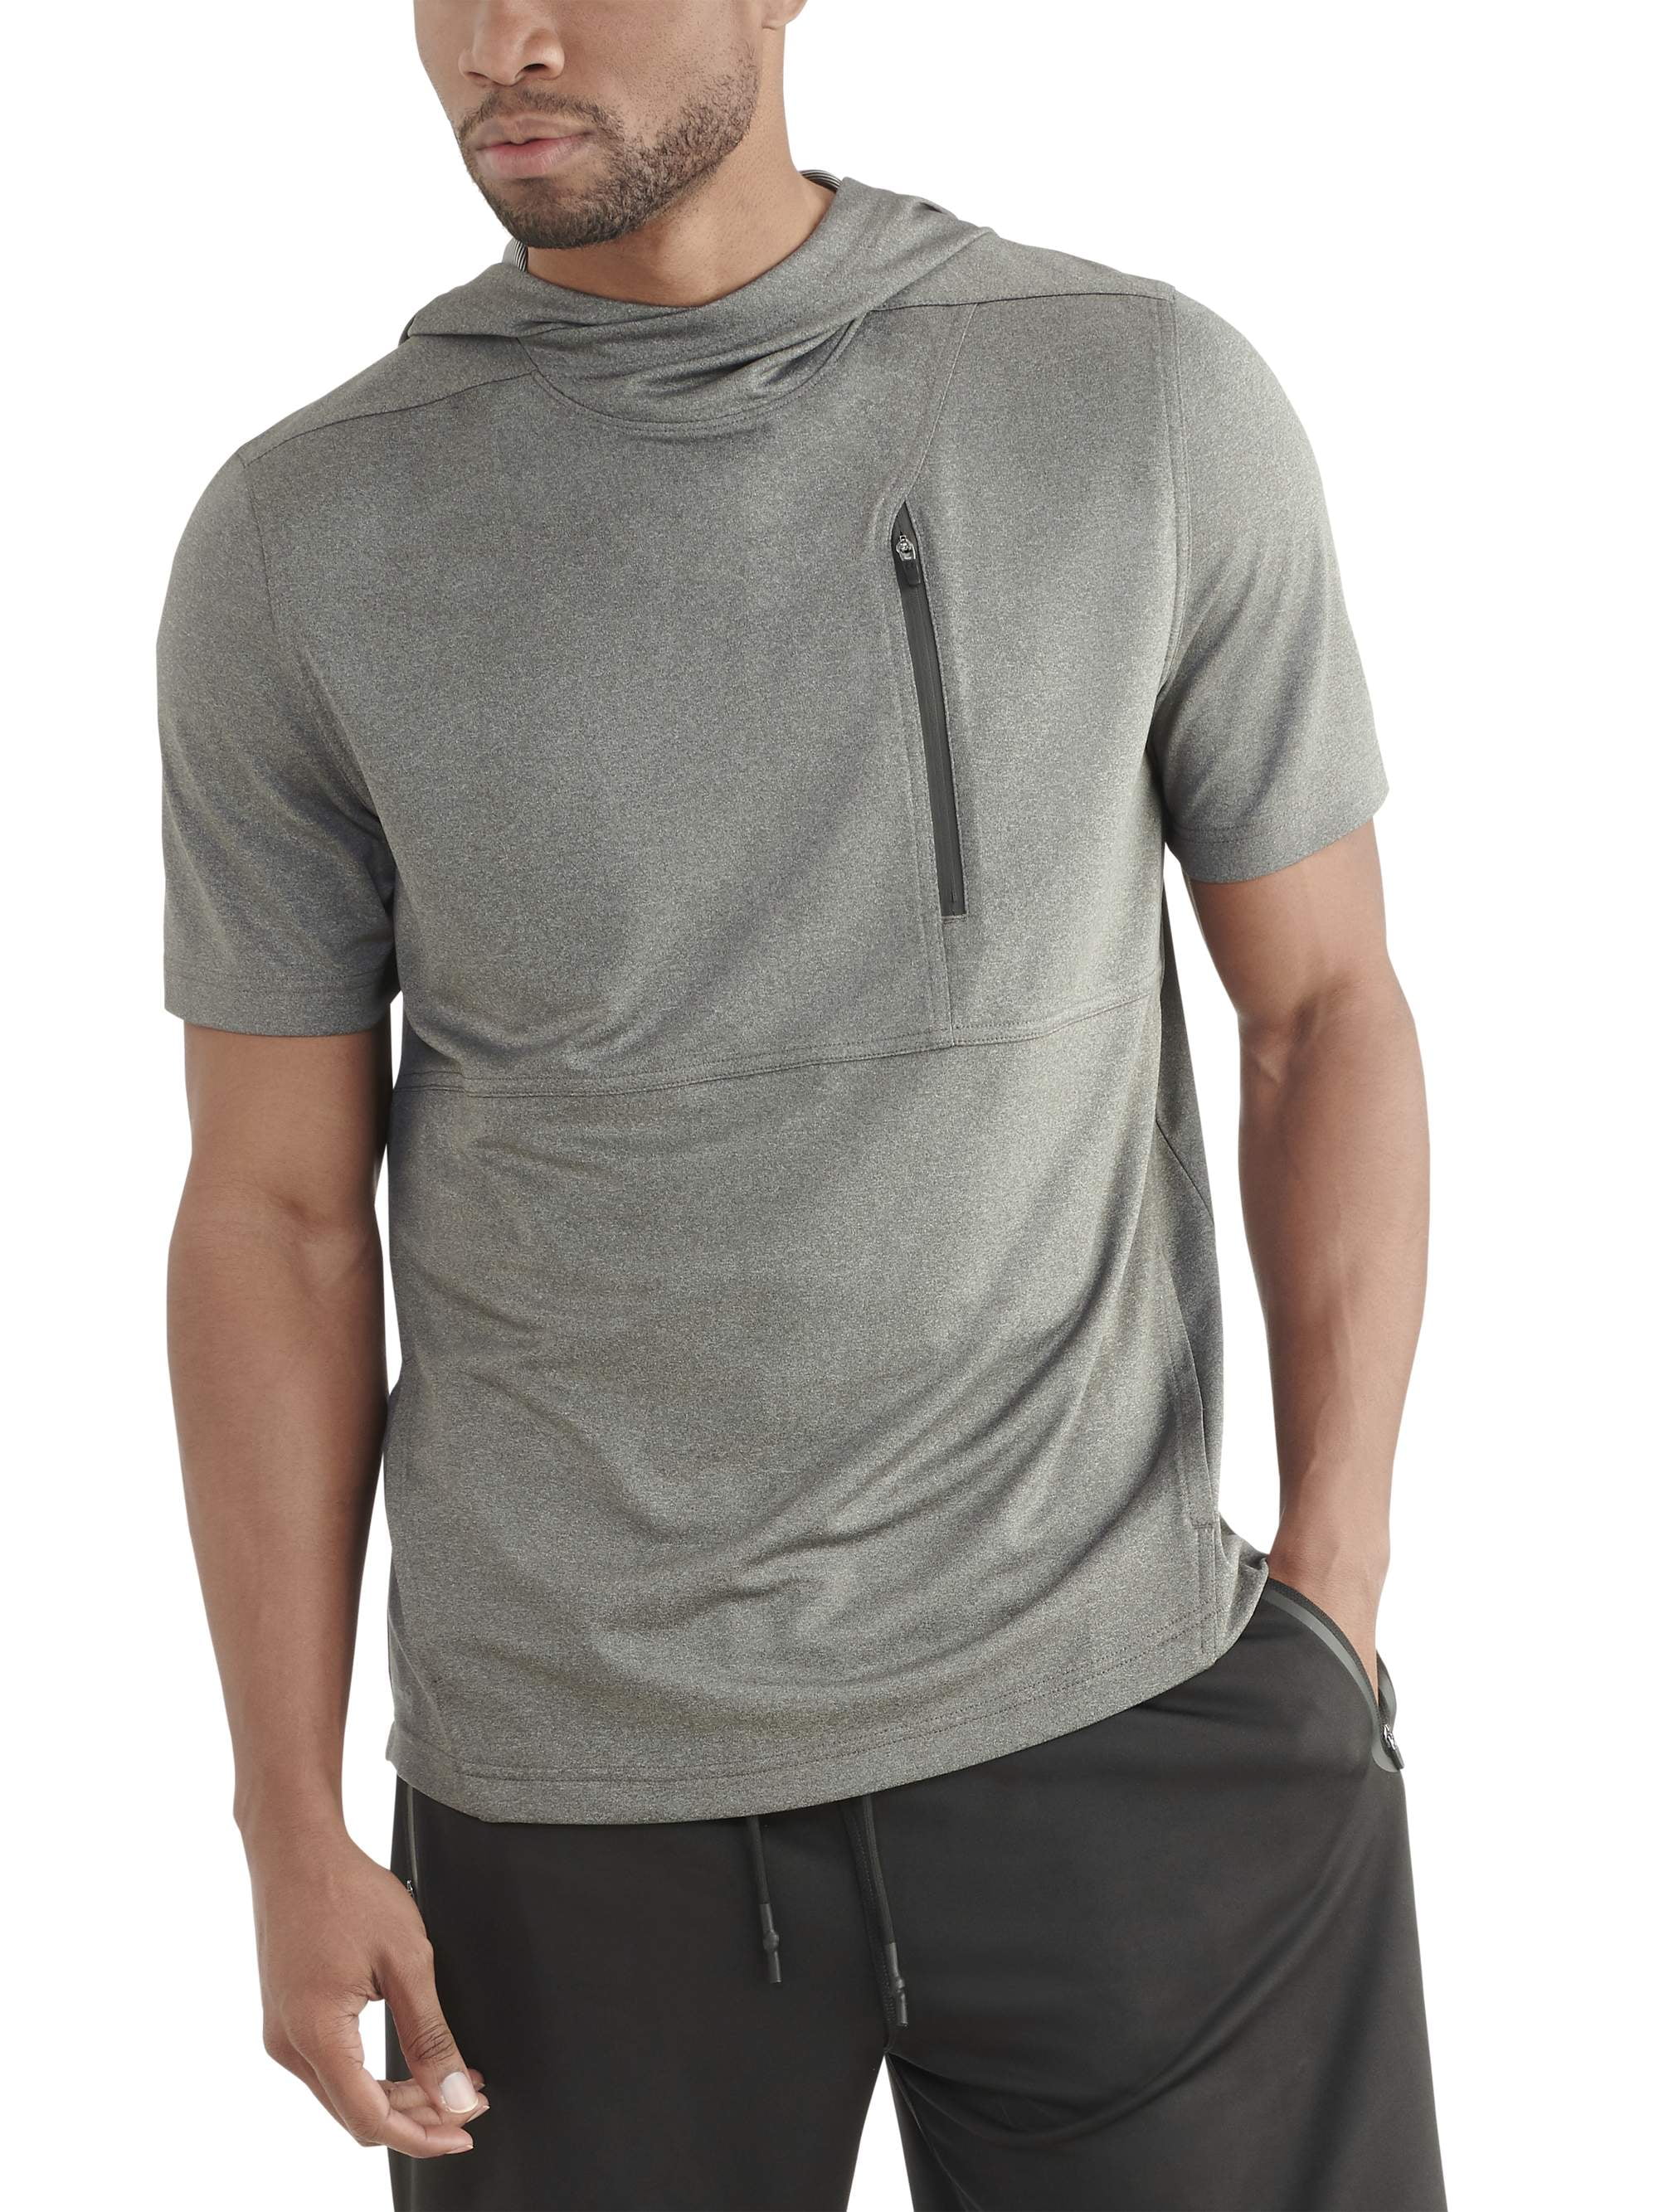 Men's Short Sleeve Hoodie - Walmart.com